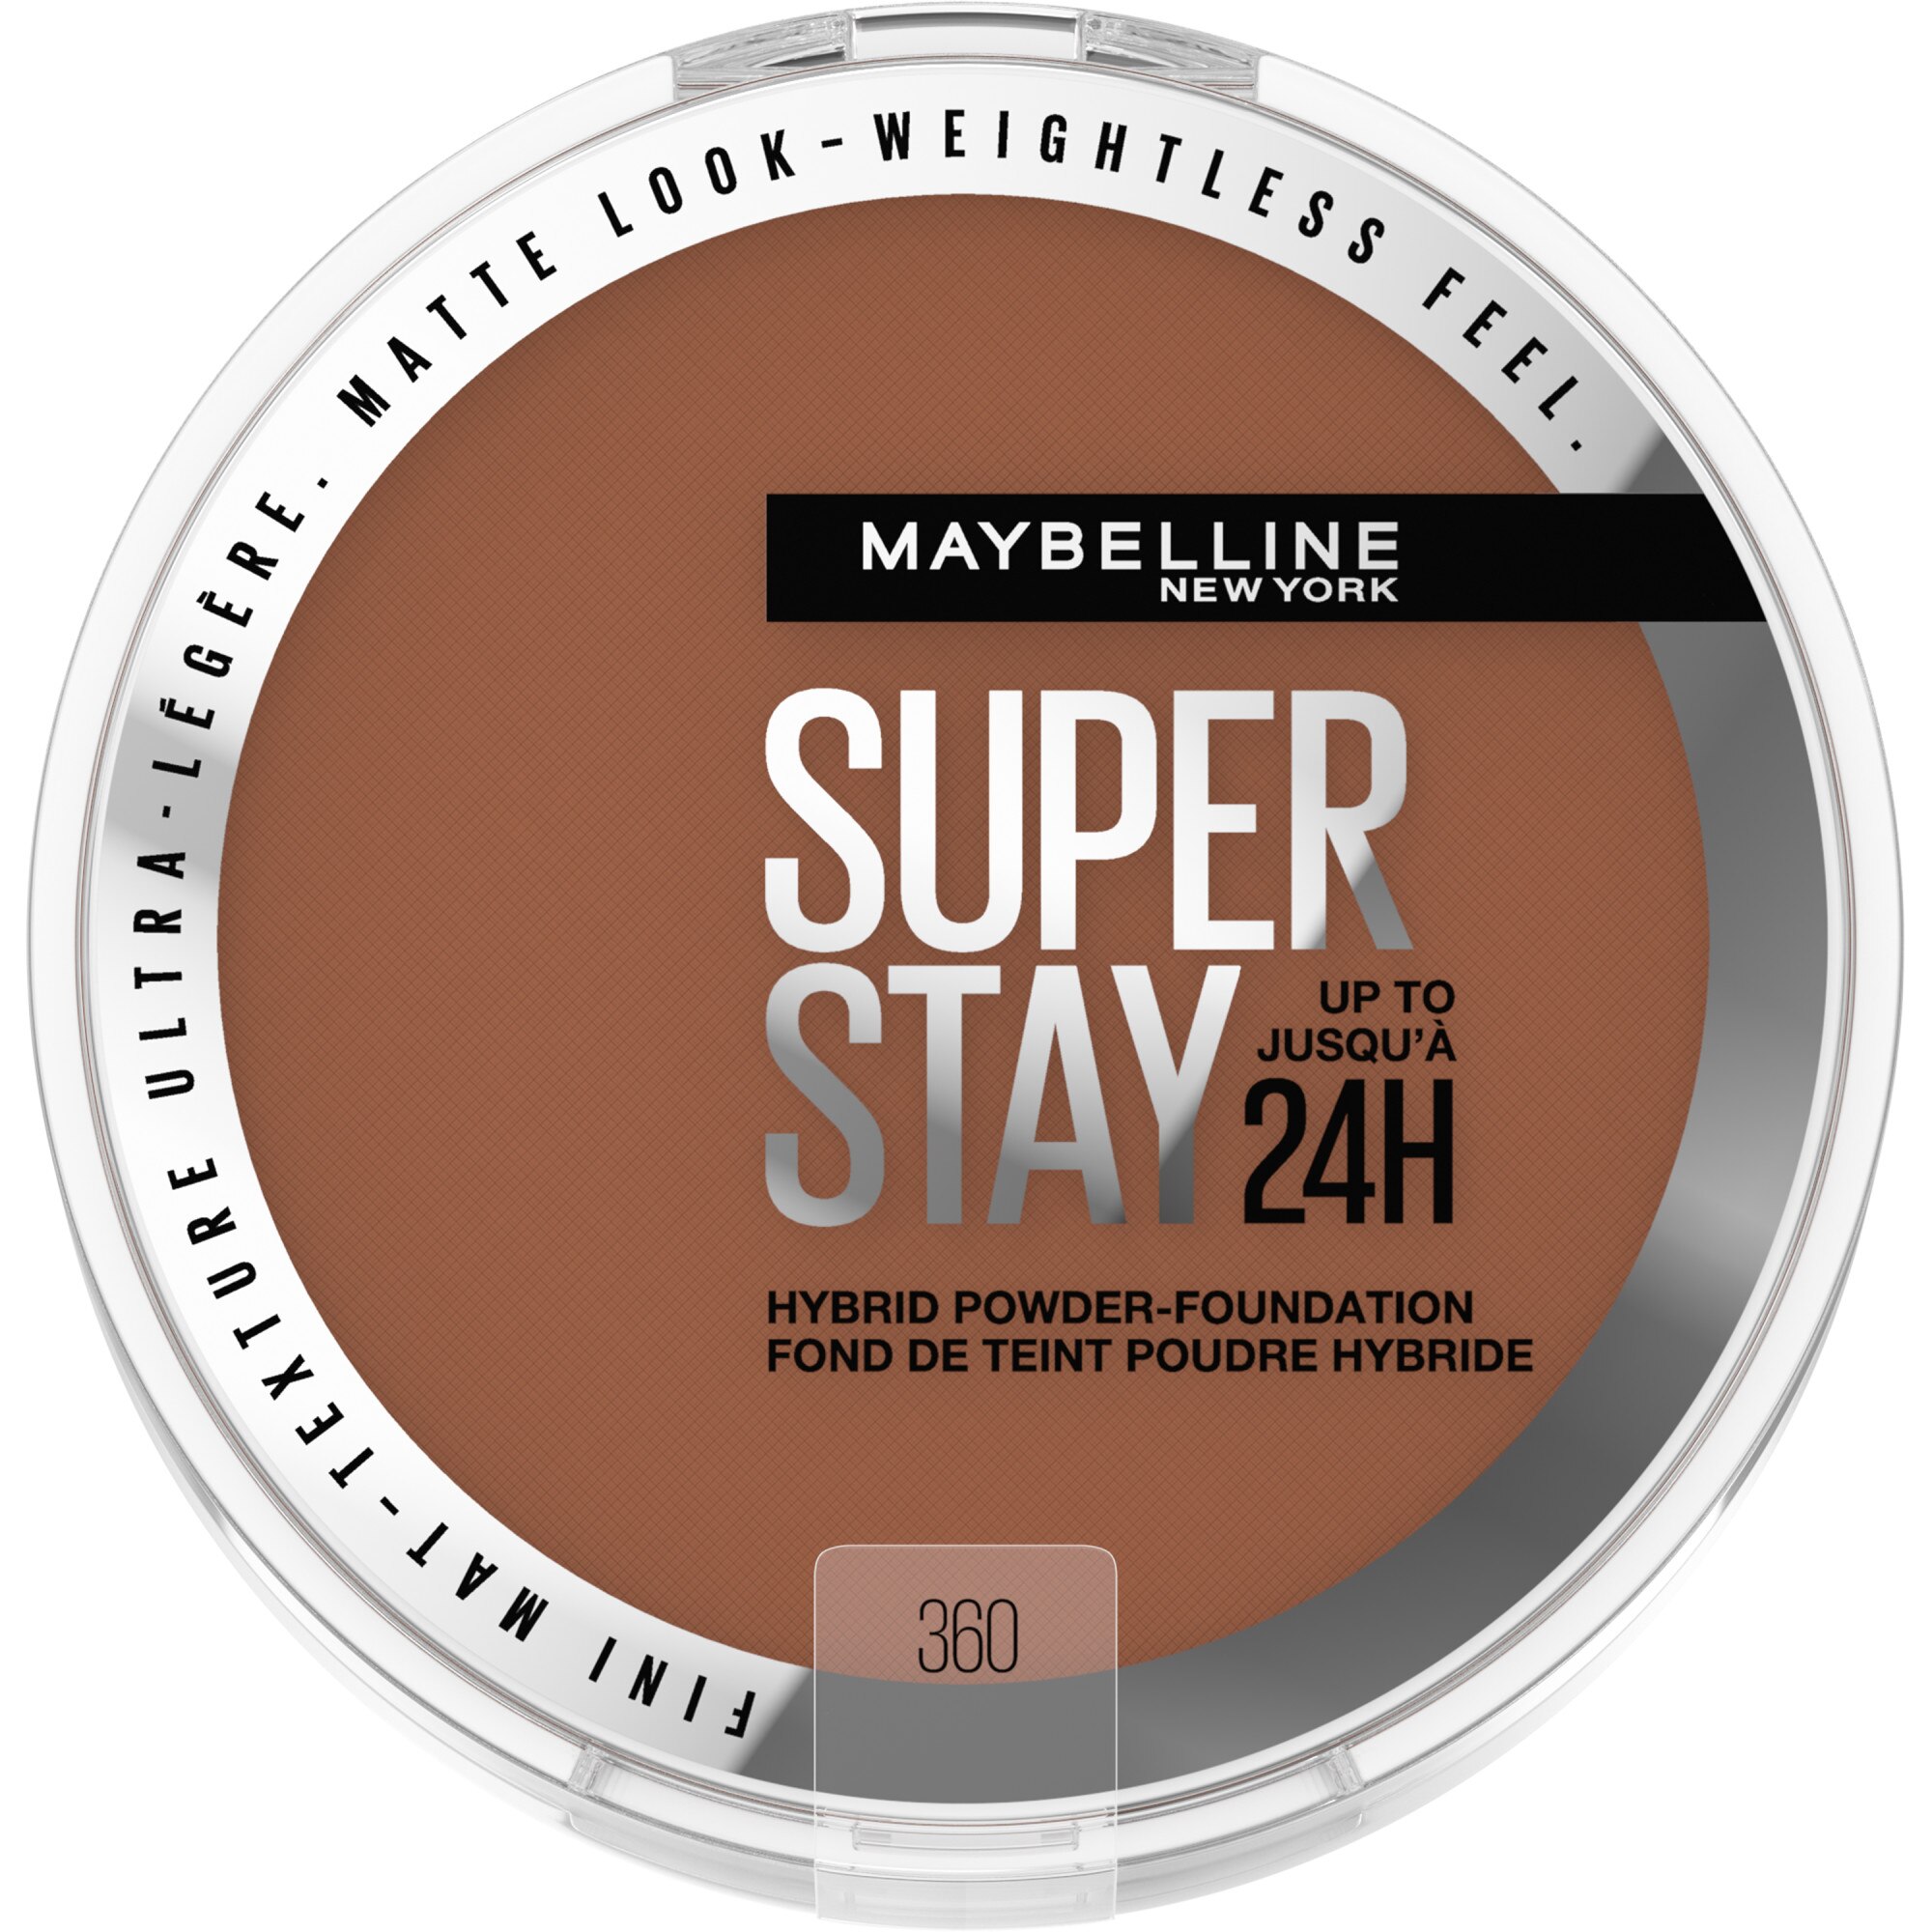 Maybelline New York Super Stay Up To 24HR Hybrid Powder-Foundation, 360, 0.21 Oz , CVS